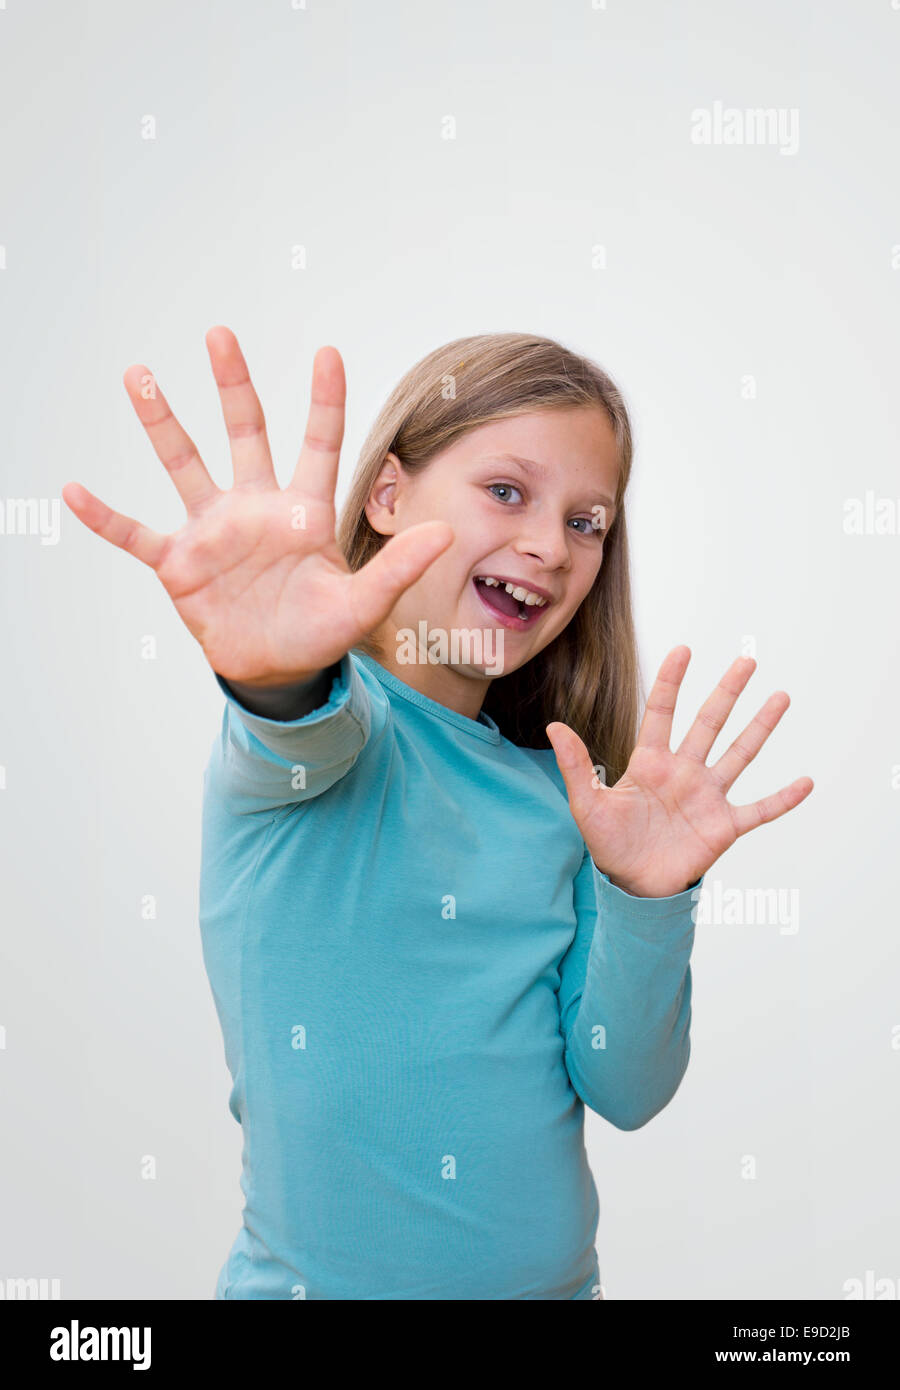 Petite fille aux longs cheveux montre ses dix doigts Banque D'Images